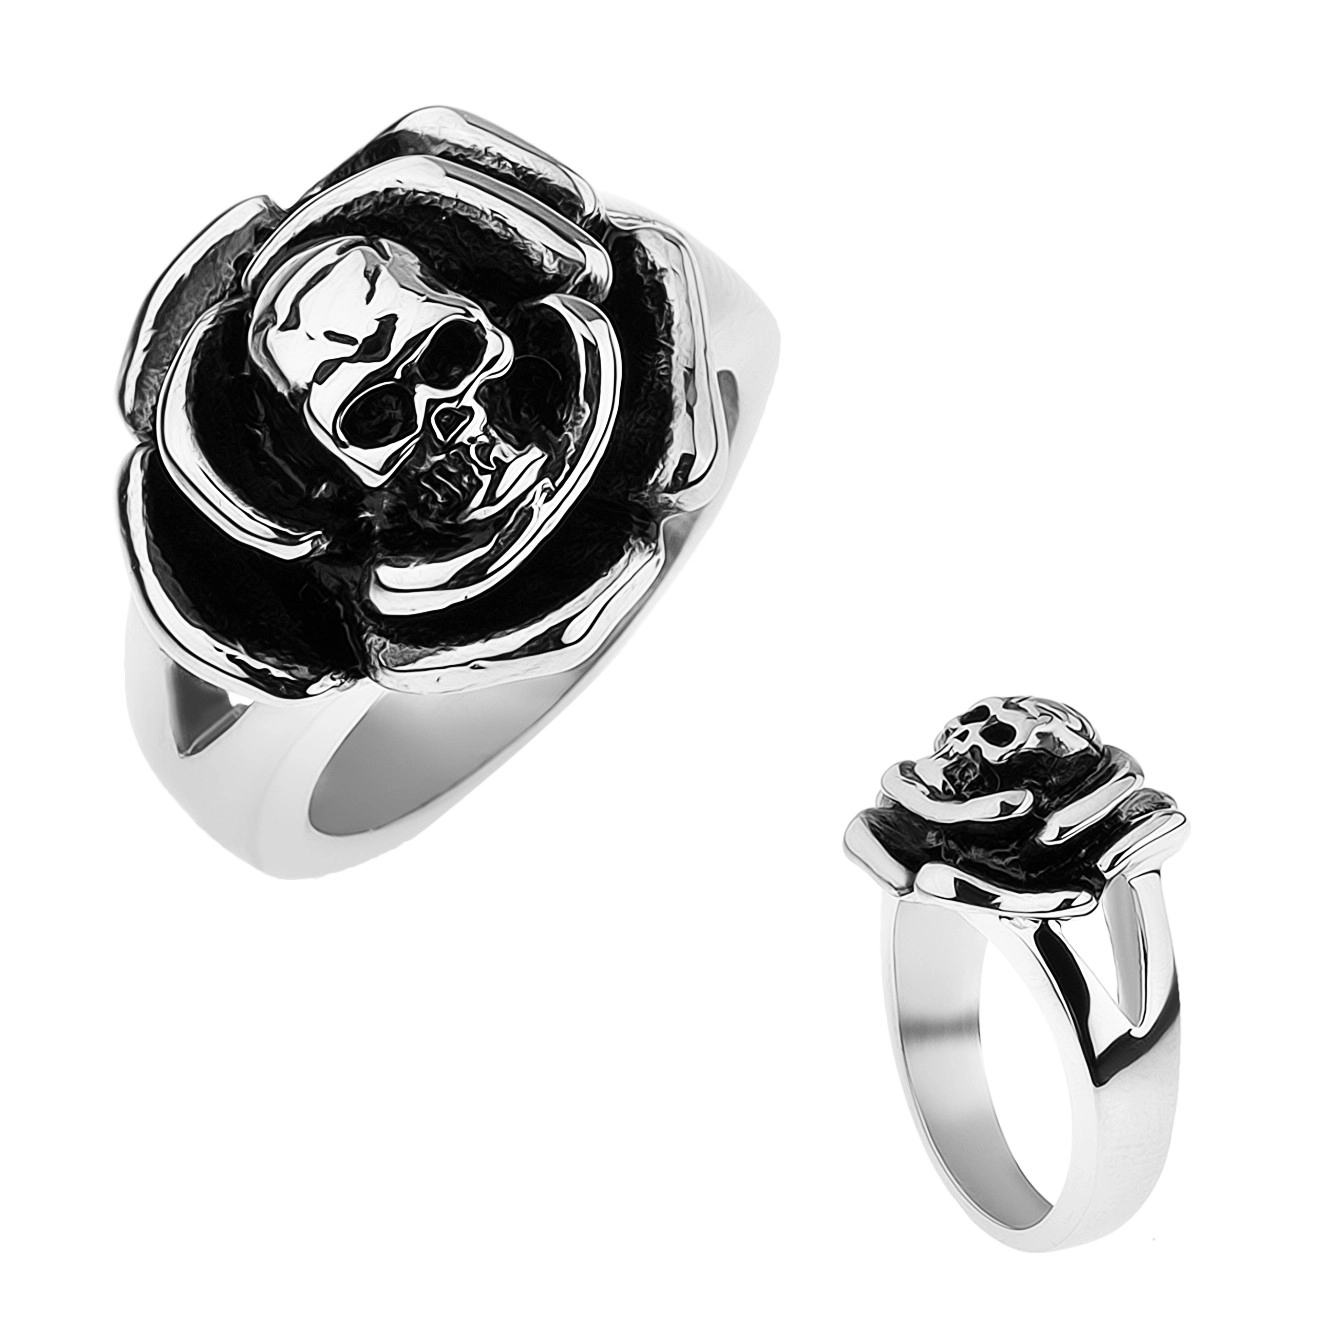 Patinovaný oceľový prsteň, ruža s lebkou v strede, rozdvojené ramená - Veľkosť: 59 mm